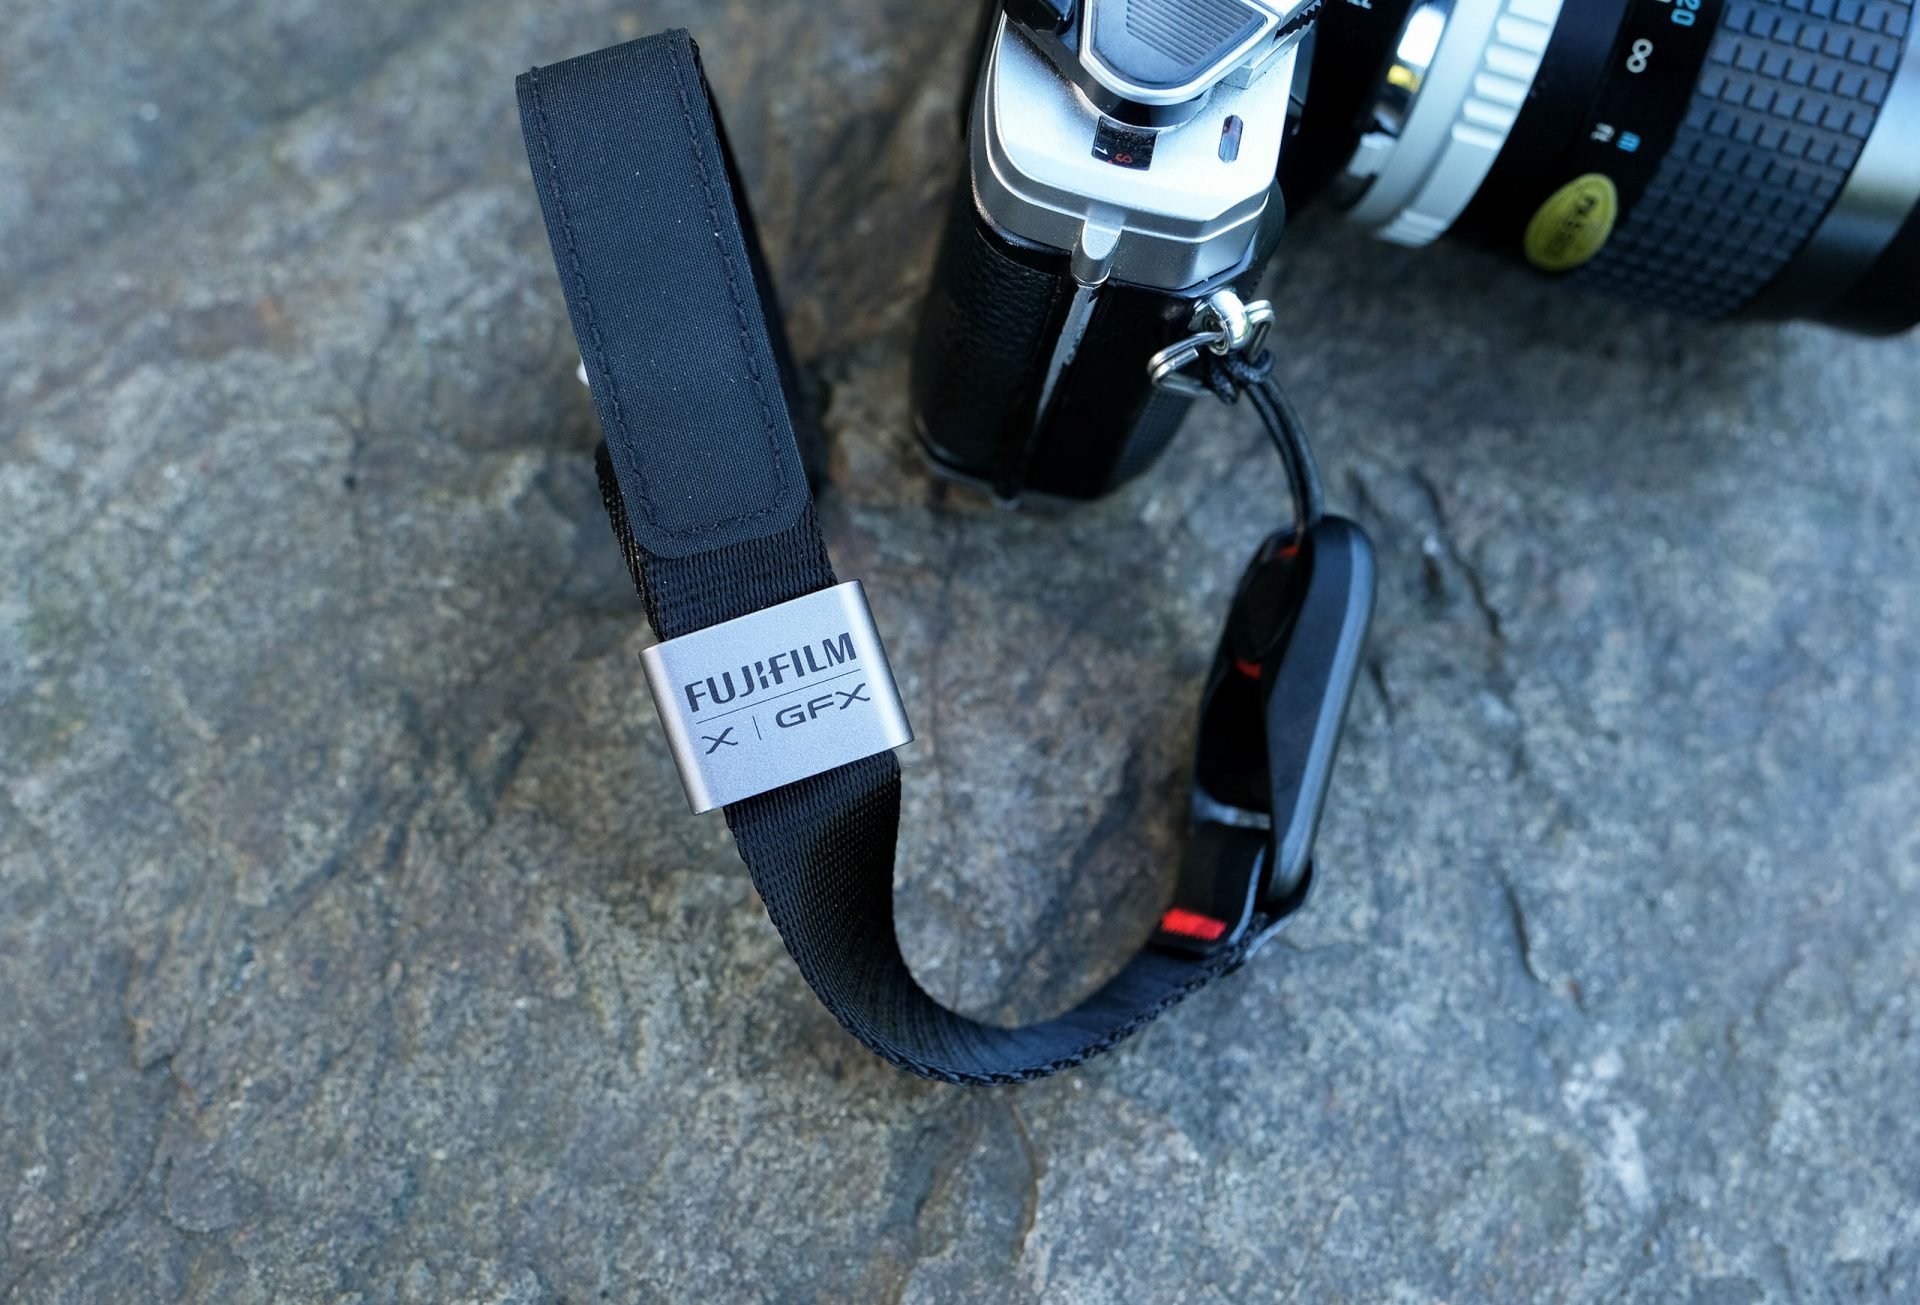 Peak Design ra mắt dây đeo máy ảnh hợp tác với Fujifilm phiên bản giới hạn